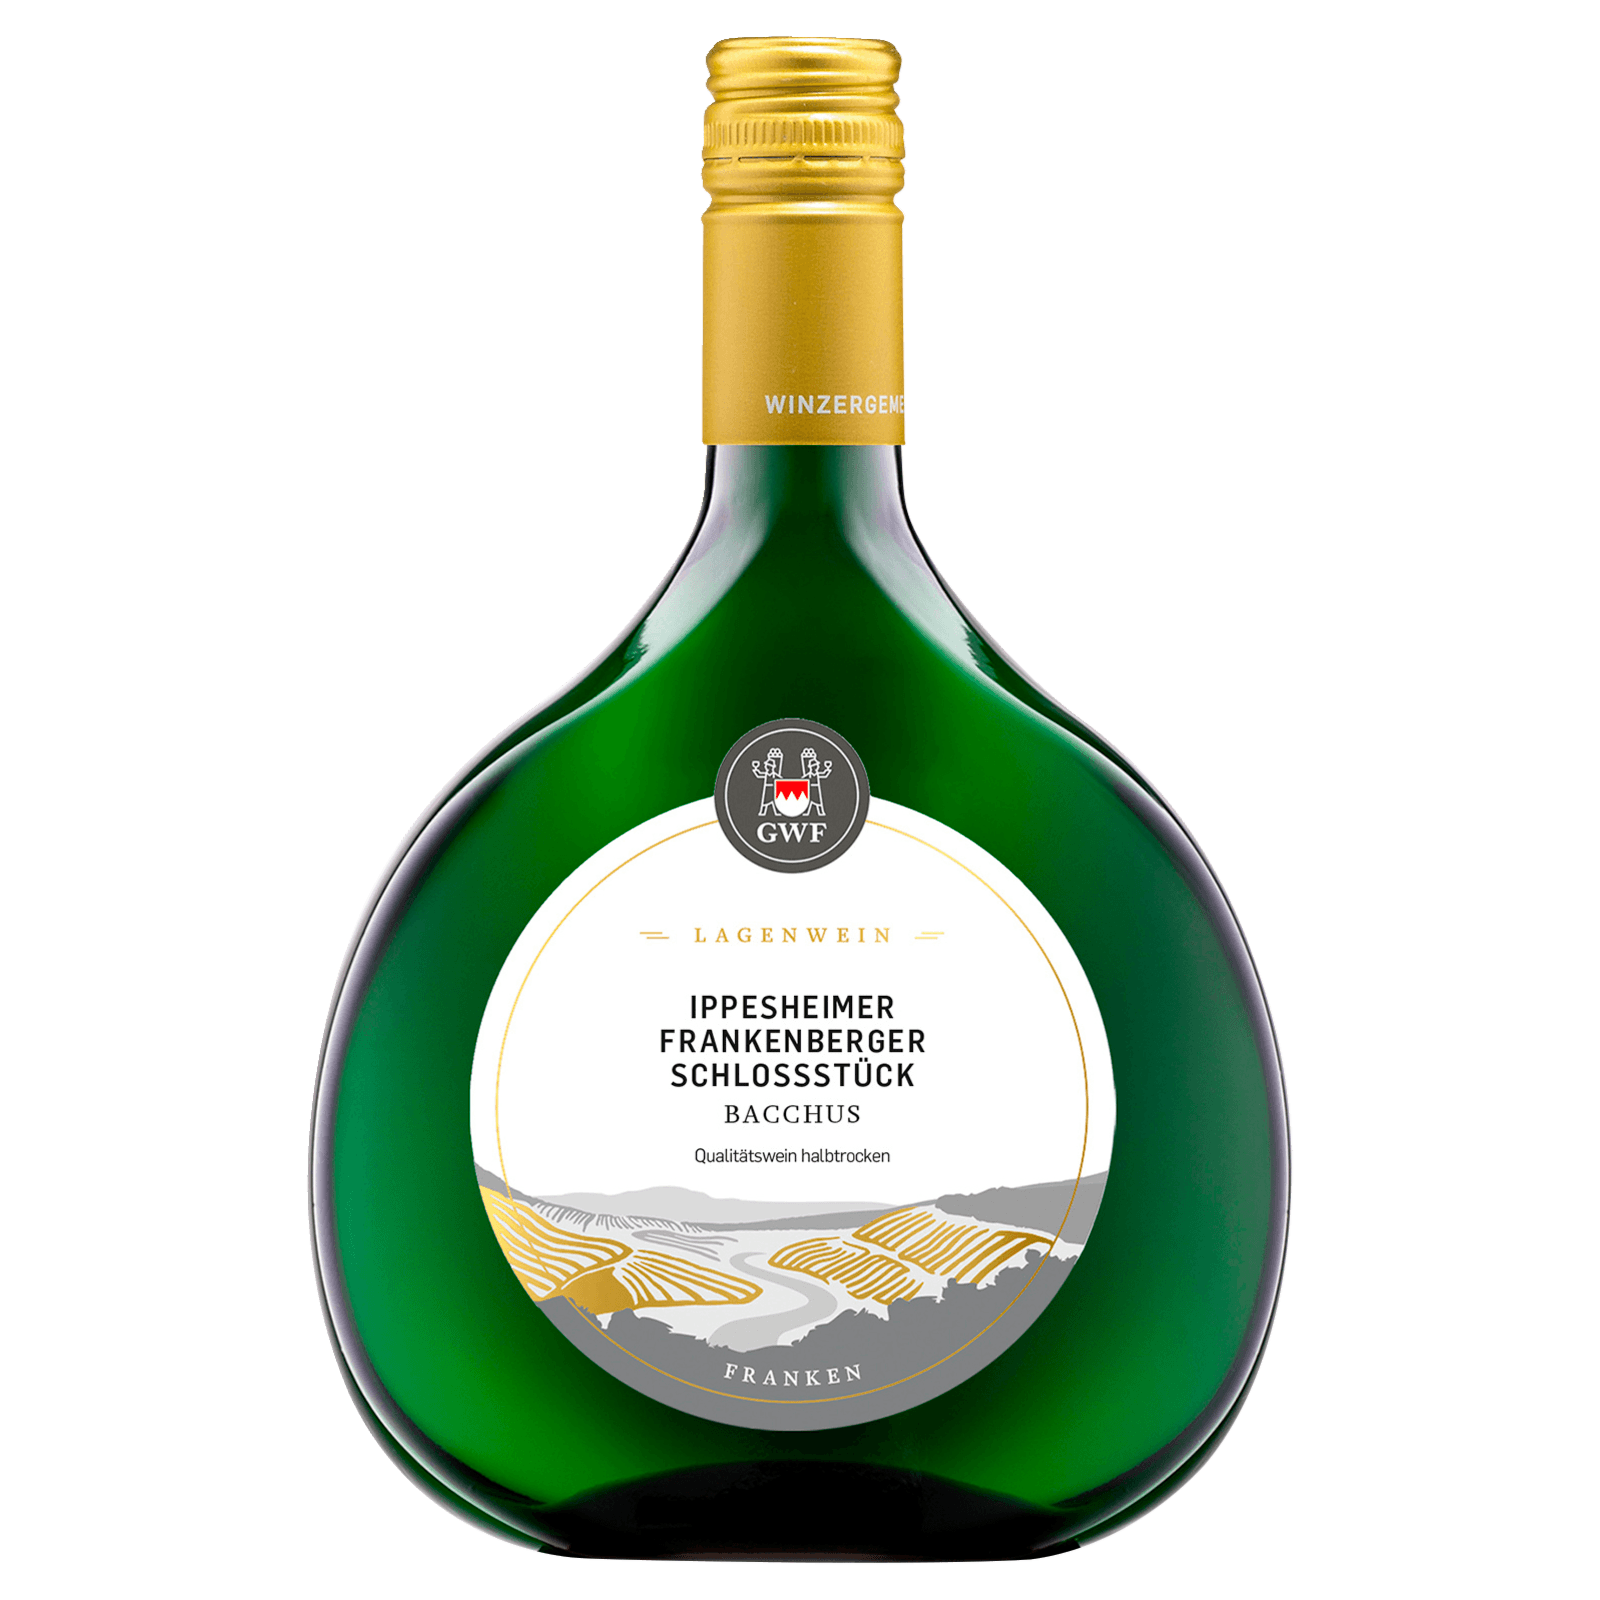 Frankenberger online halbtrocken Weißwein Bacchus 0,75l REWE bei QbA bestellen! GWF Ippesheimer Schlossstück